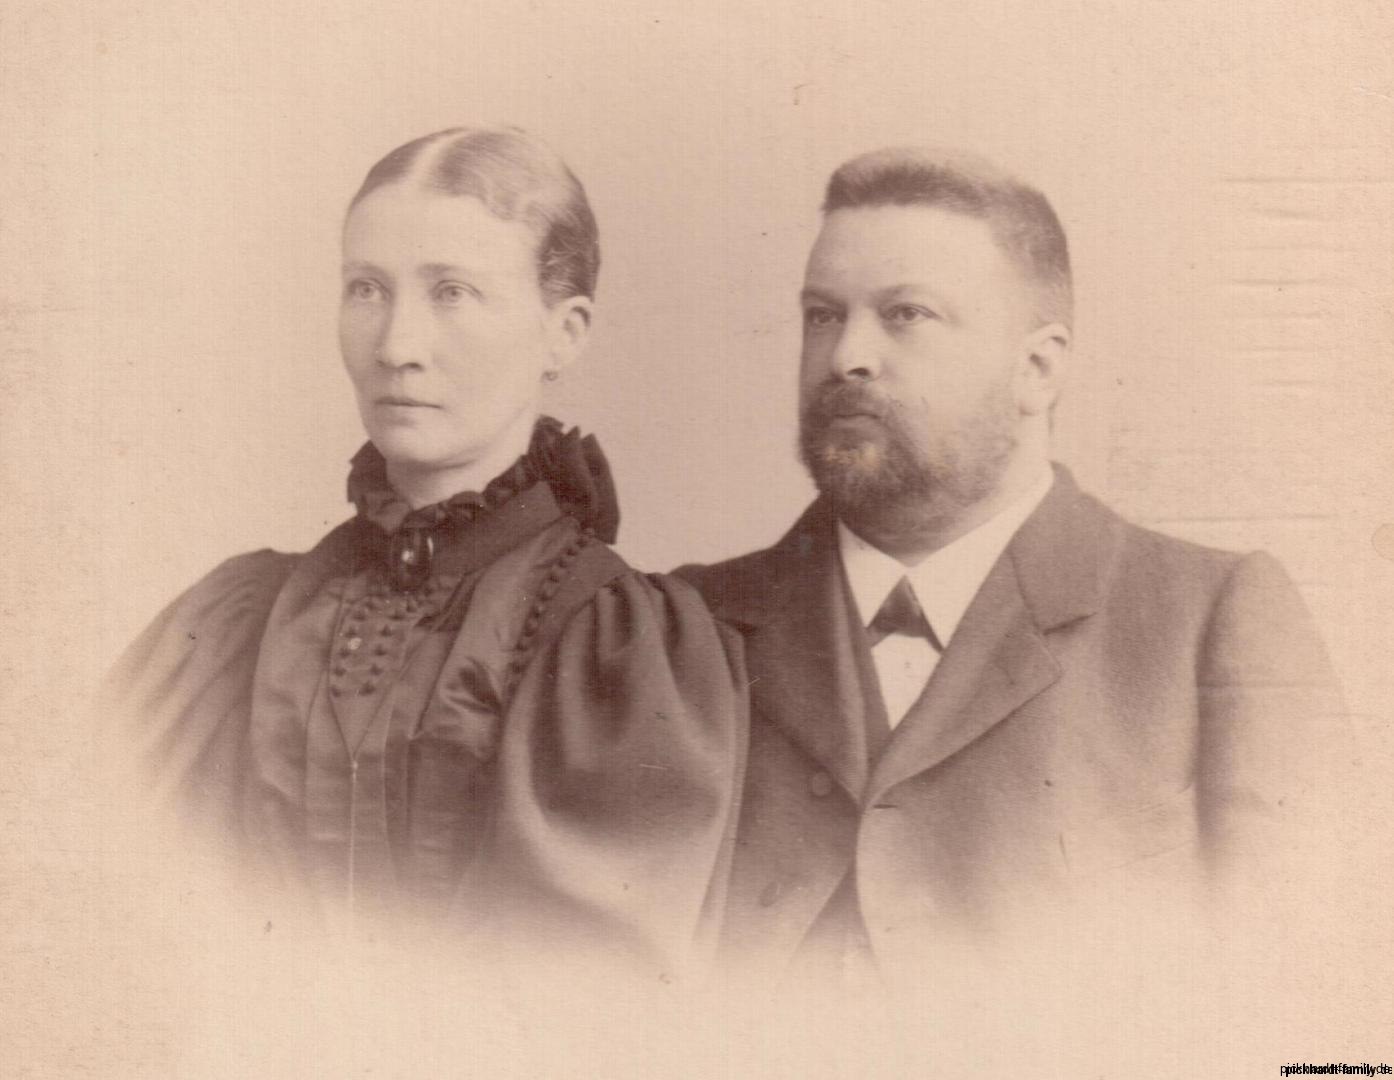 Emilie und Ernst Pickhardt